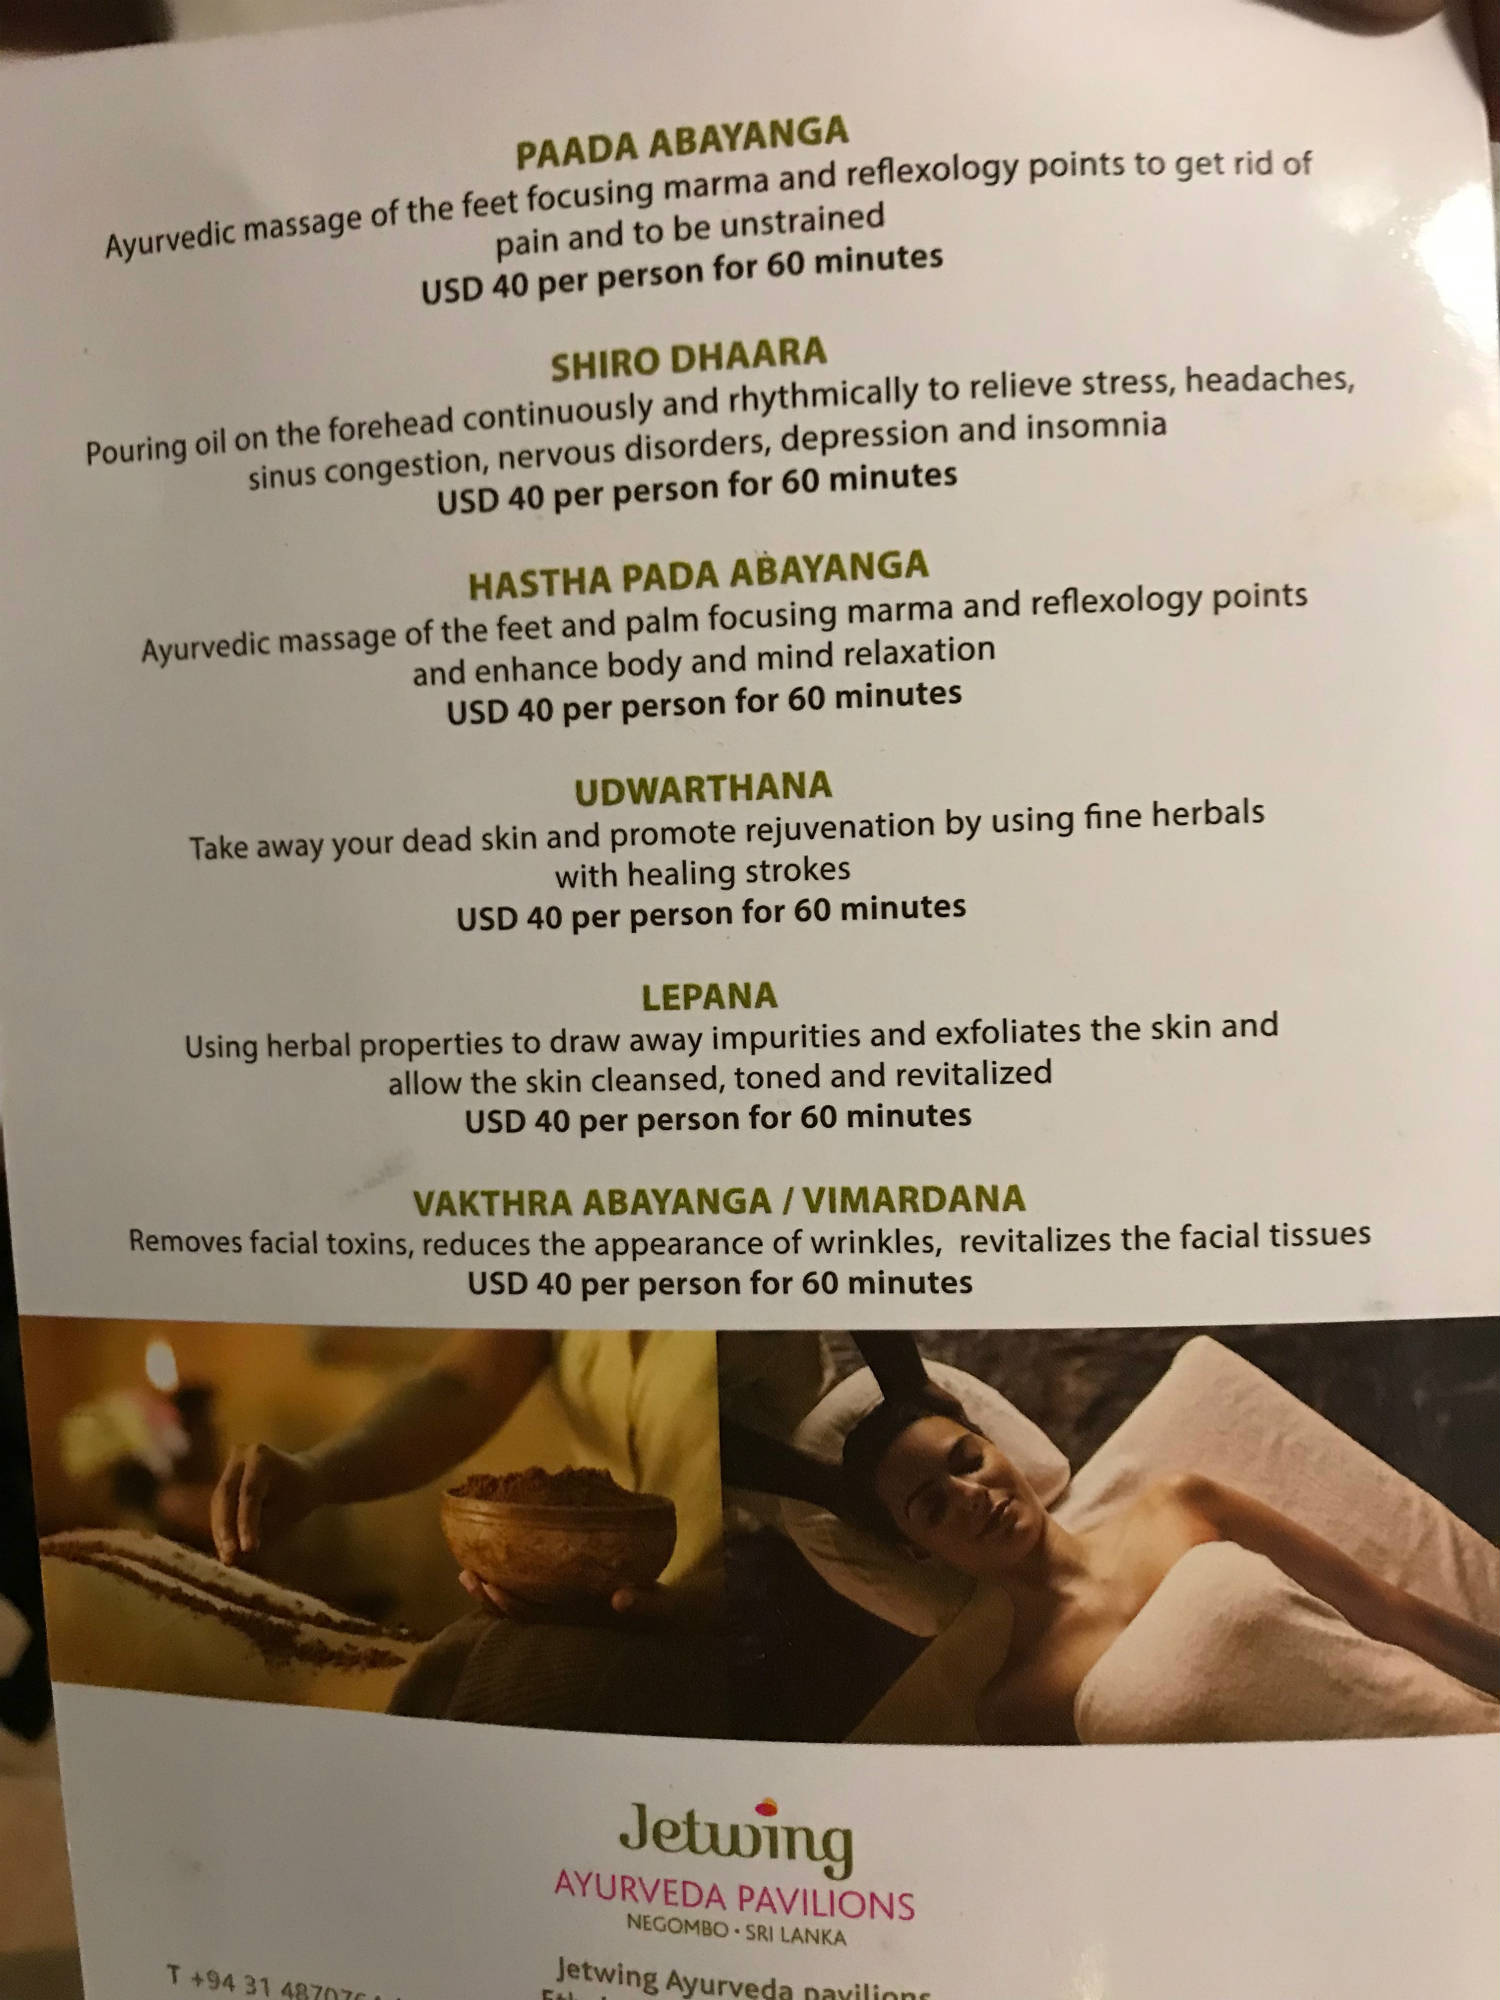  ayurveda pavilions menu